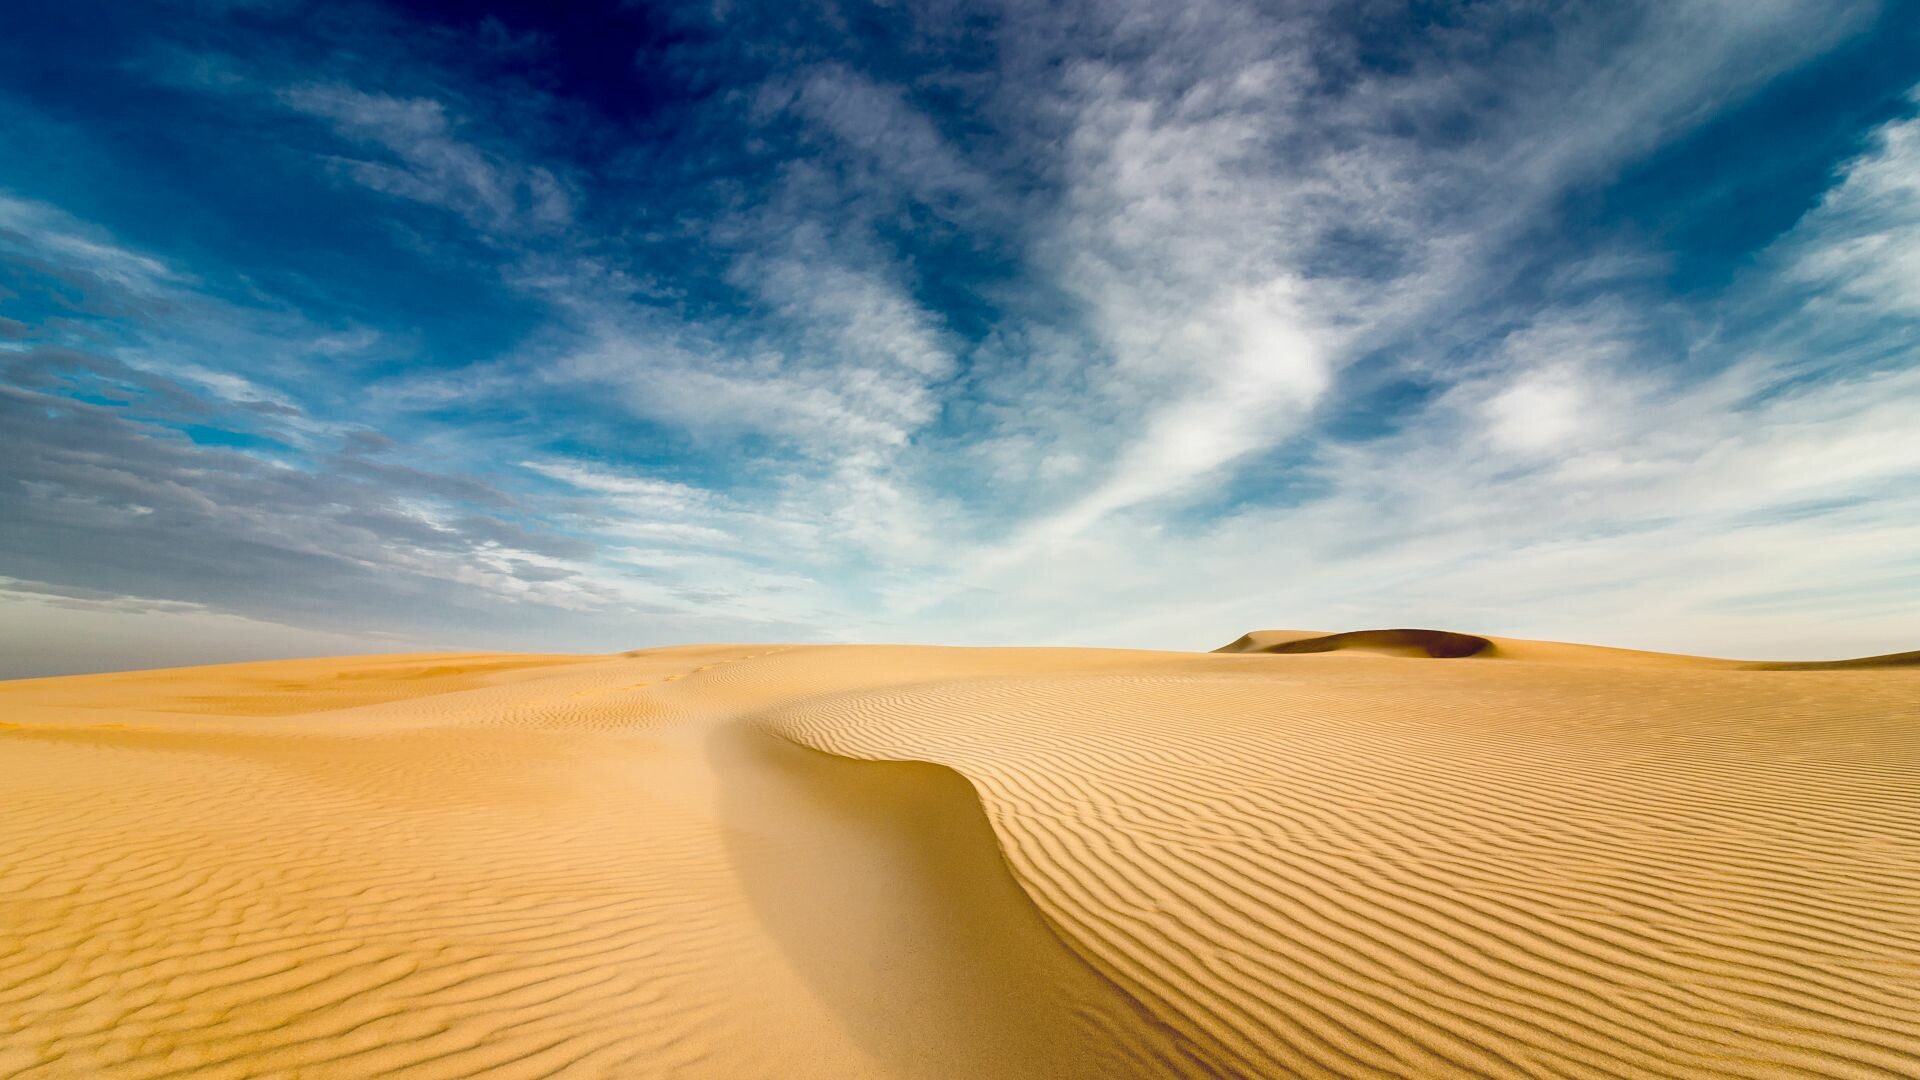 Desert: Sand, Dunes, Landscape, Erg, Horizon. 1920x1080 Full HD Background.